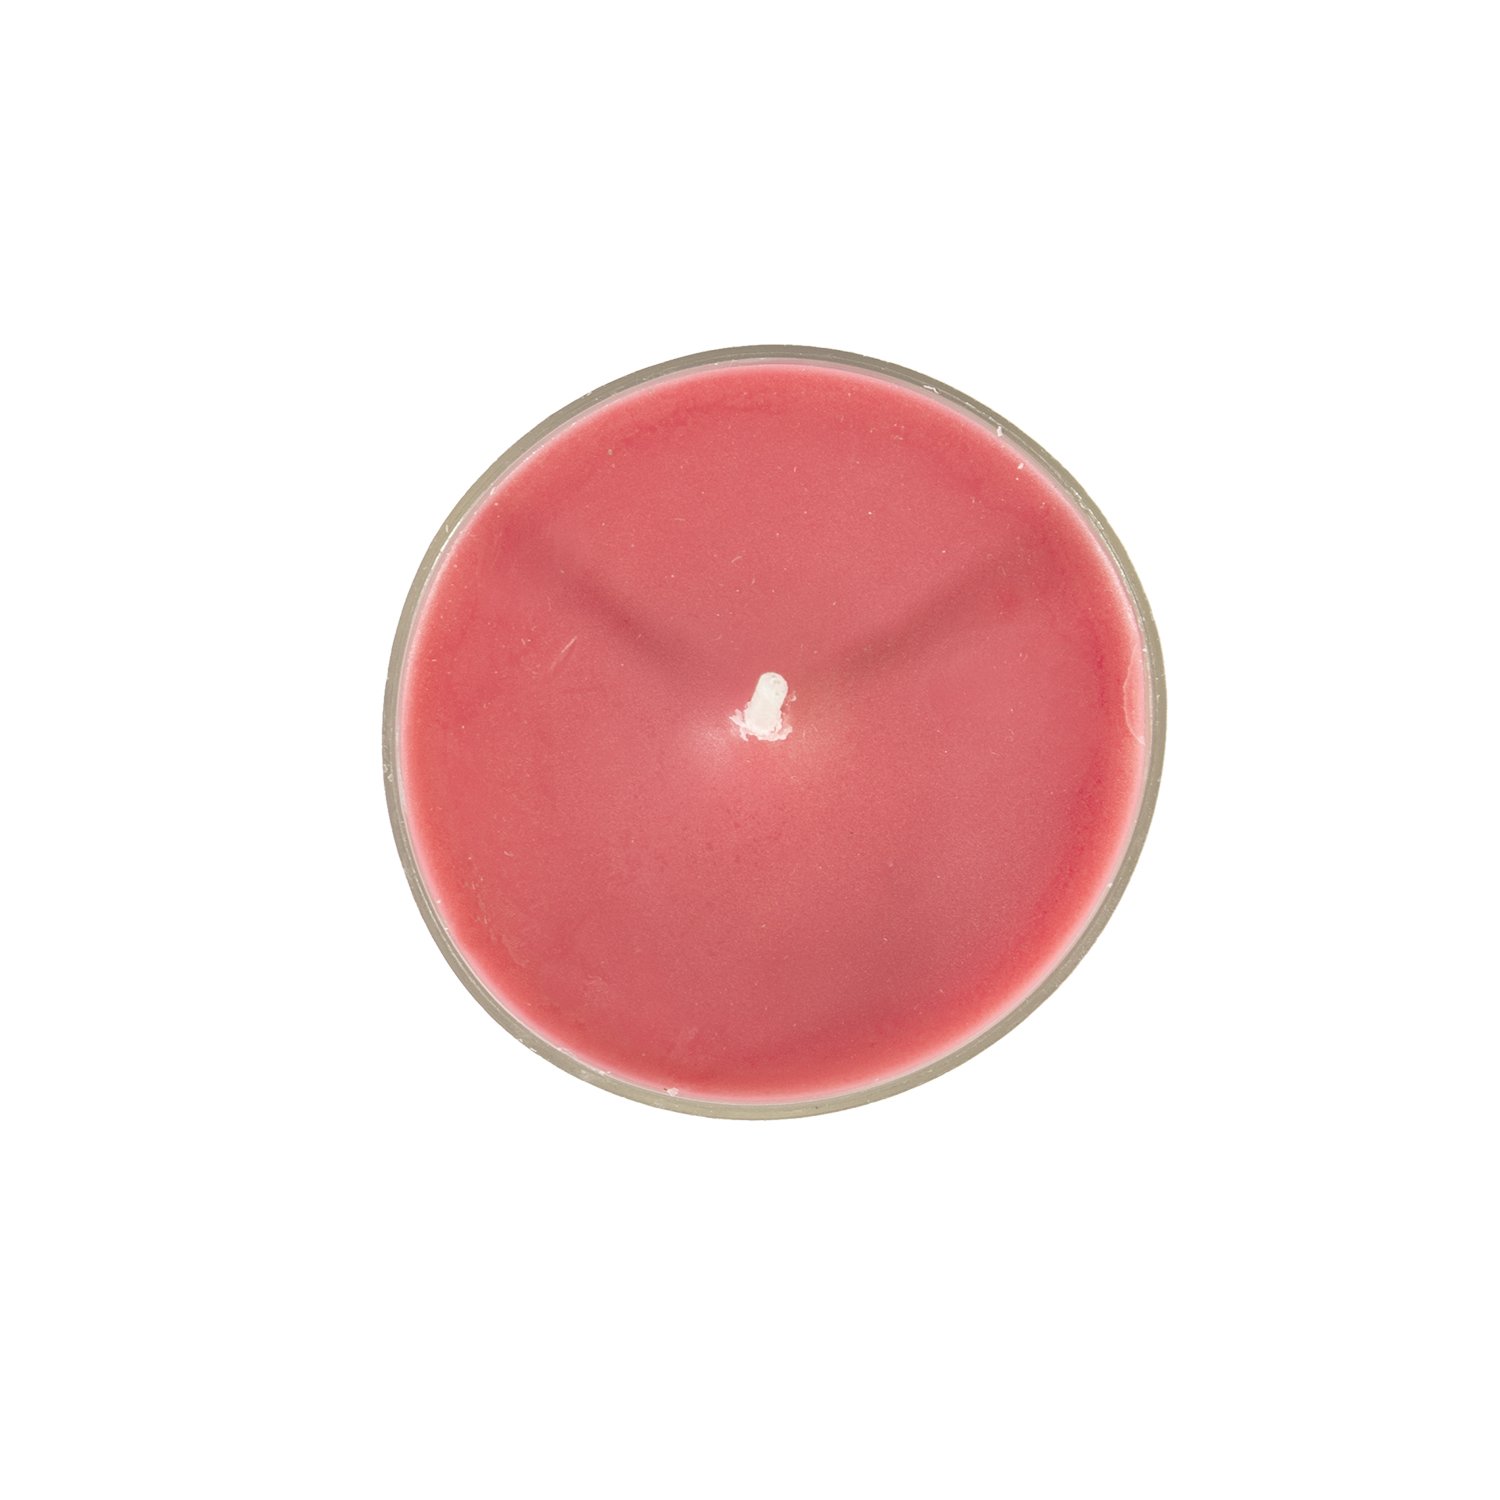 Kvepiančios skridininės žvakės MAXI FRESH CRANBERRY,   skersmuo 5,5 cm, rožinės (spanguolių kvapo), 4 vnt. rinkinyje - 2